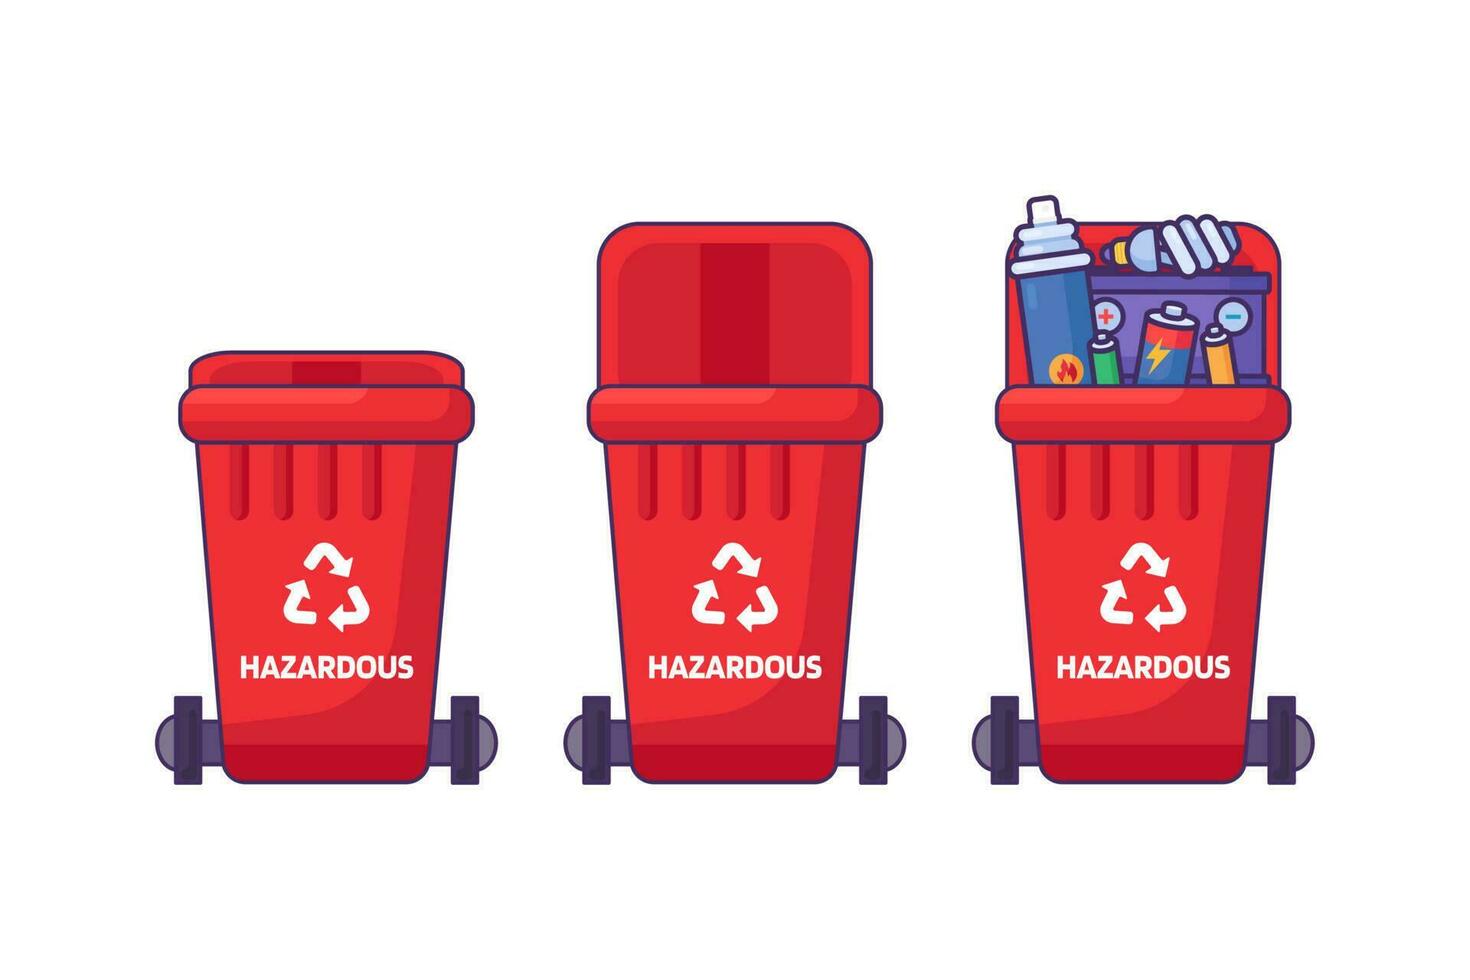 gefährlich Artikel Recycling Sortierung Behälter vektor